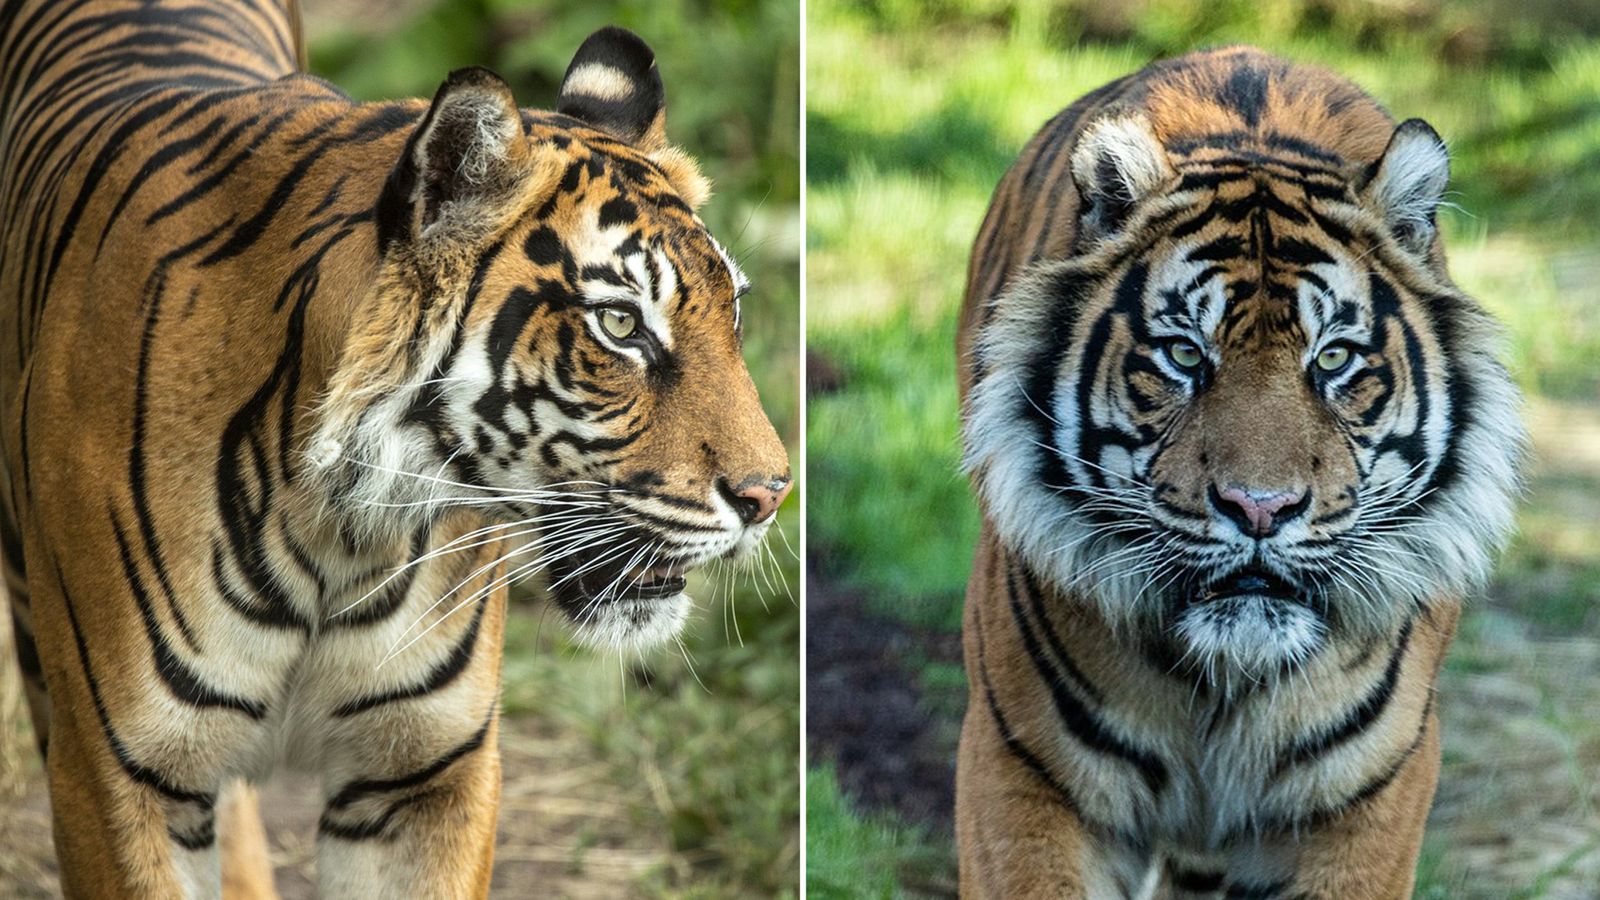 Sumatran tiger Melati killed at London Zoo by new mate